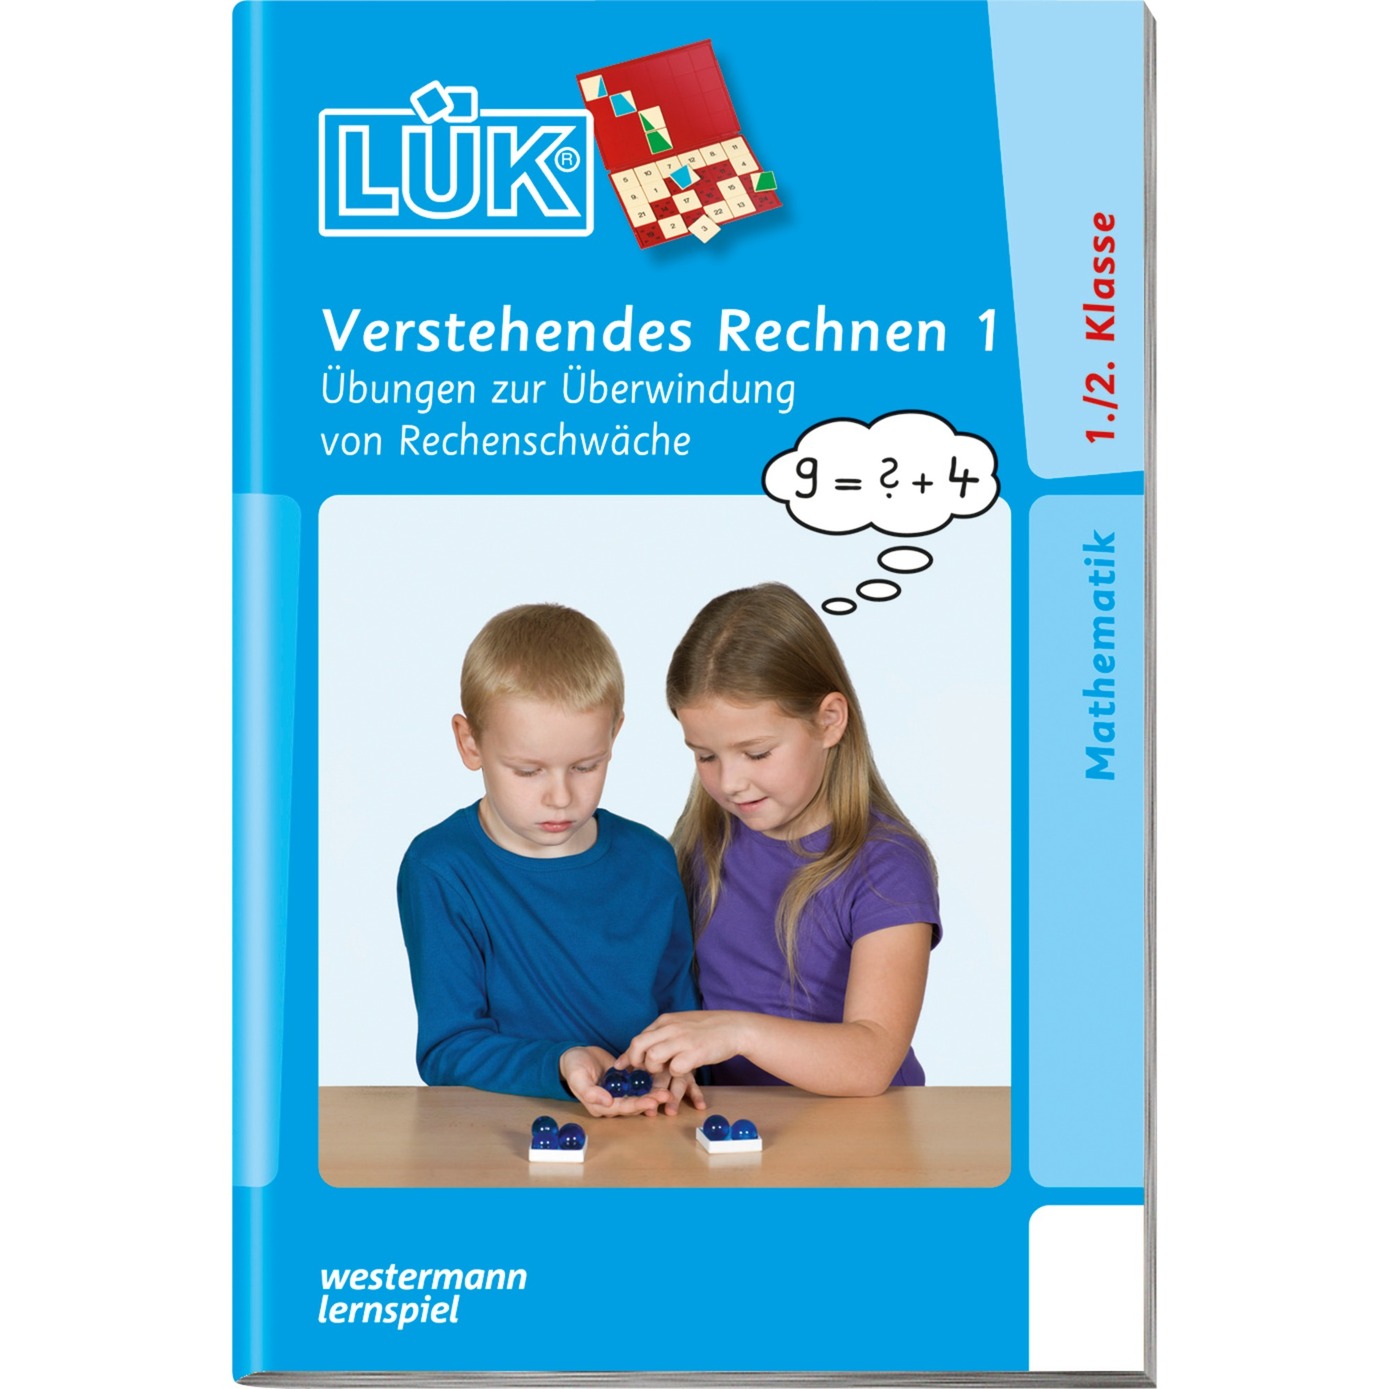 Verstehendes Rechnen 1 książka dla dzieci, Książki edukacyjne